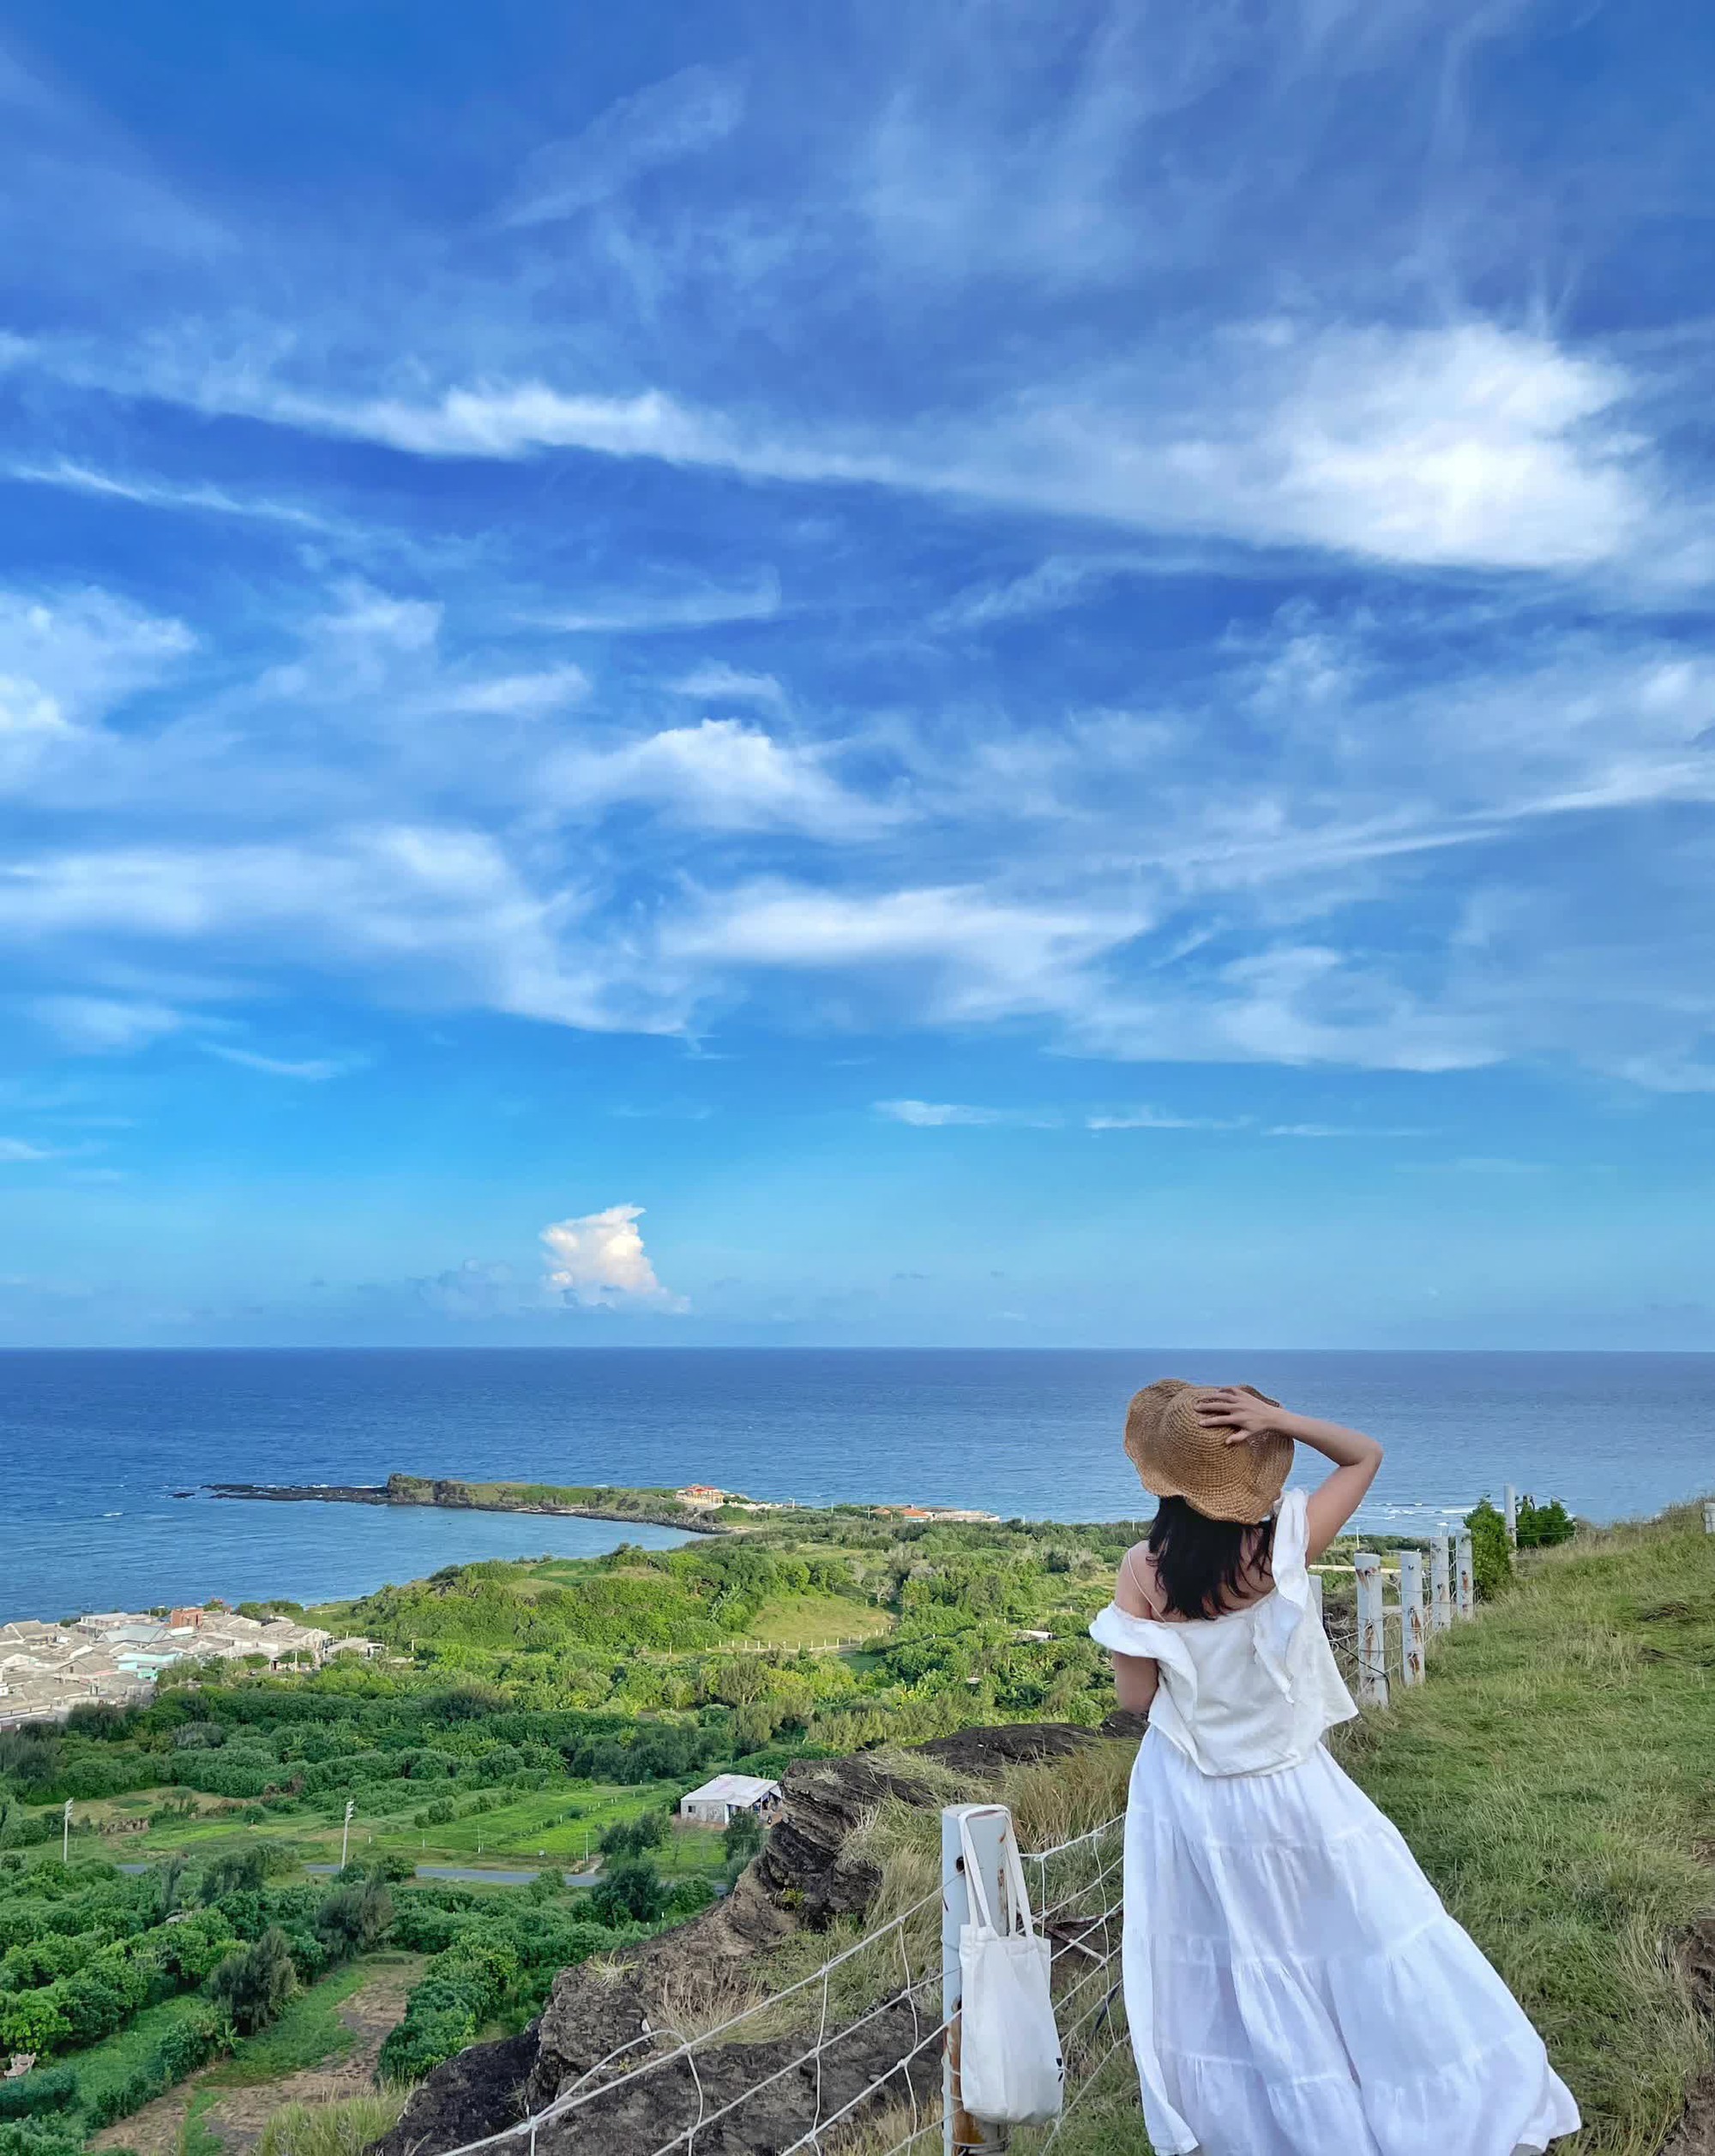 Đảo Phú Quý bắt đầu vào mùa biển xanh nắng vàng, chỉ cần đứng vào là có ảnh đẹp- Ảnh 8.